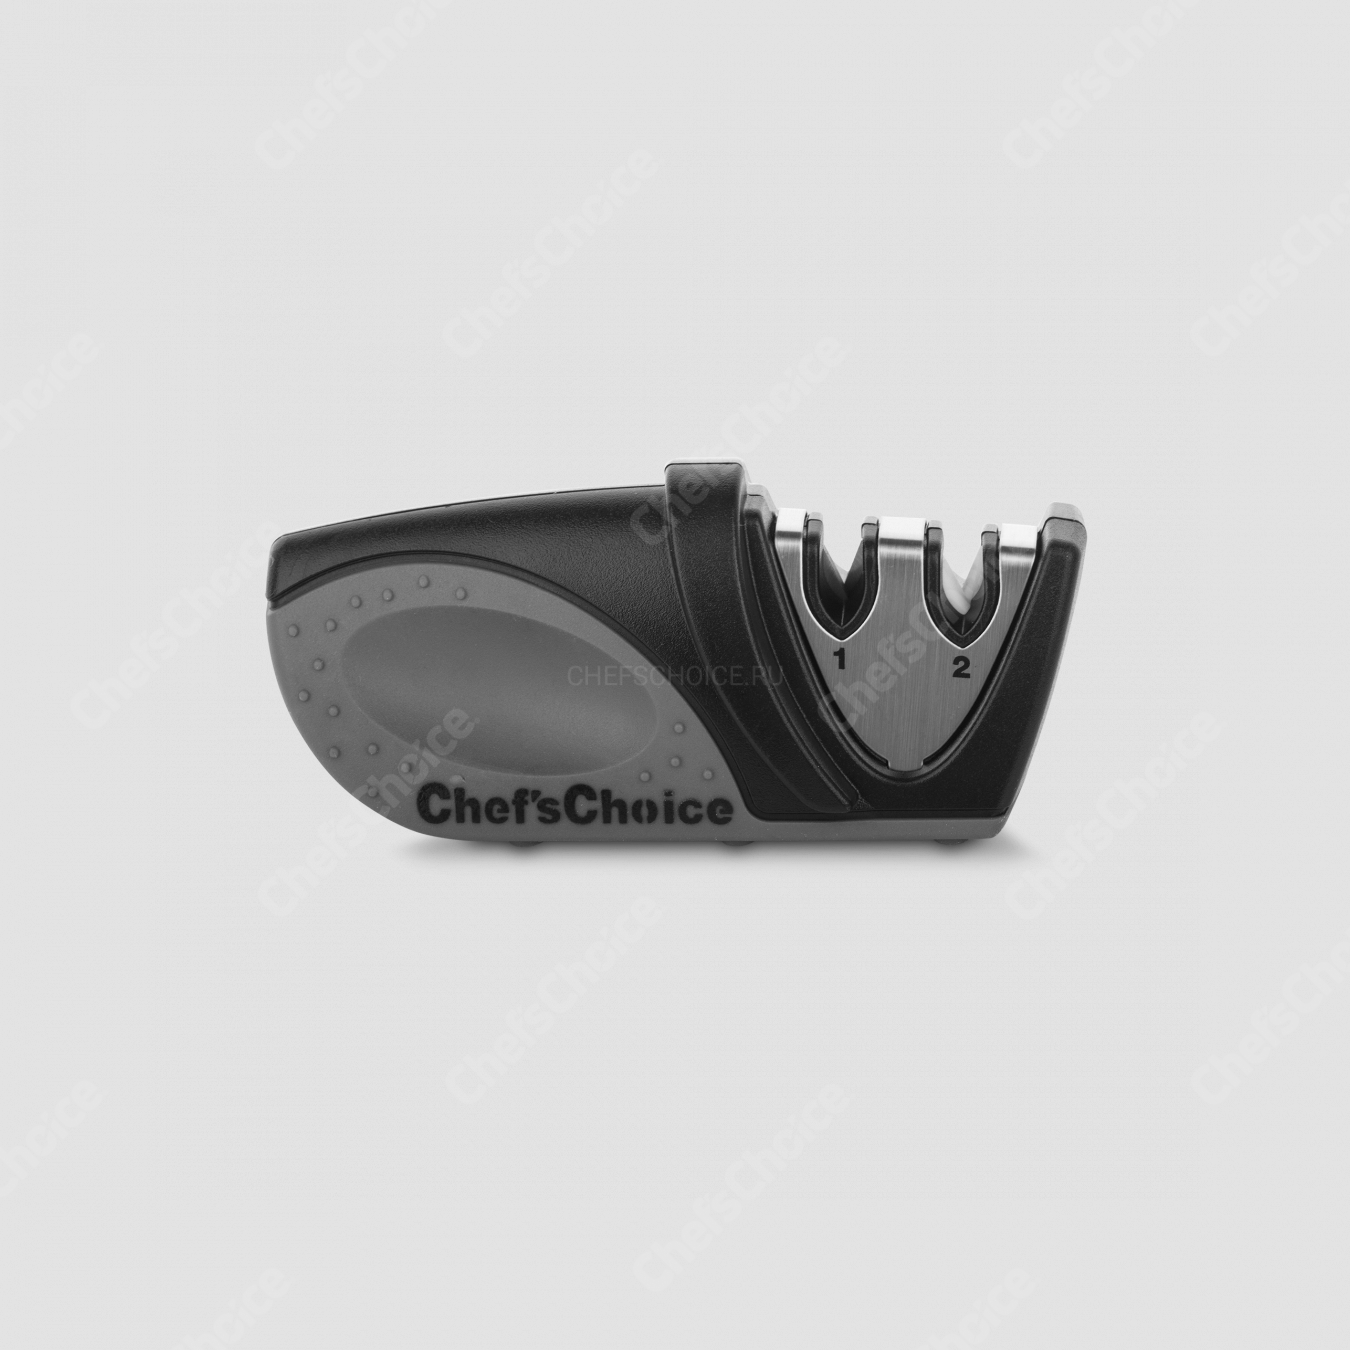 Точилка механическая, двухуровневая для ножей, серия Knife sharpeners, Chefs Choice, США